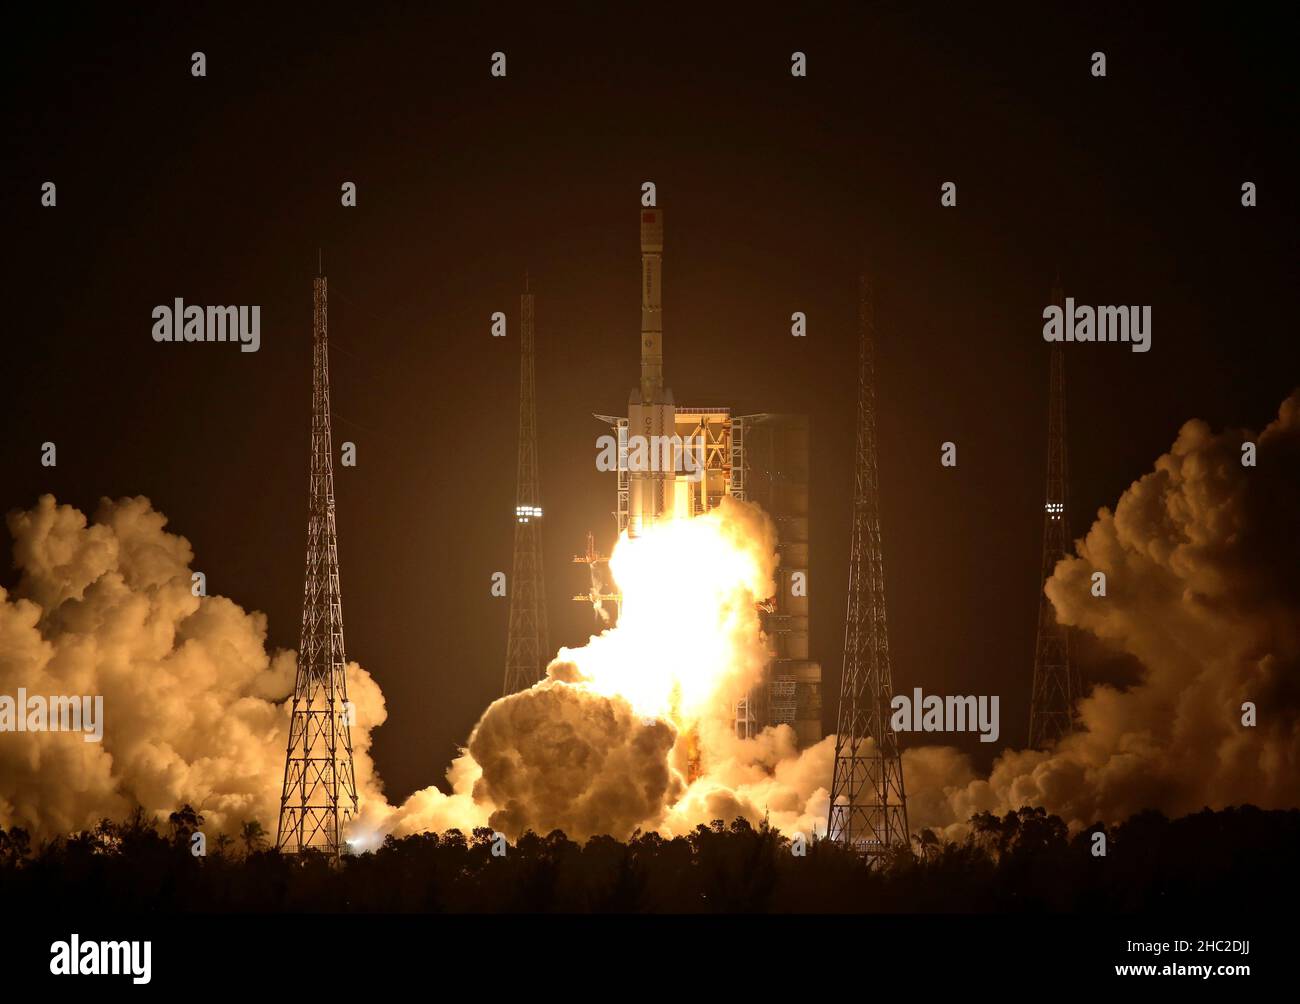 Wenchang.23rd décembre 2021.Une longue fusée de mars 7A transportant deux satellites sort du site de lancement de Wenchang dans la province de Hainan, dans le sud de la Chine, le 23 décembre 2021.La fusée s'est enragé à 6 h 12 (heure de Pékin) au site de lancement de l'engin spatial Wenchang dans le sud de la province de Hainan et a rapidement envoyé les satellites Shiyan-12 01 et Shiyan-12 02 en orbite prédéfinie.La mission a marqué le vol de 402nd des roquettes du transporteur long March.Credit: Hu Xujie/Xinhua/Alay Live News Banque D'Images